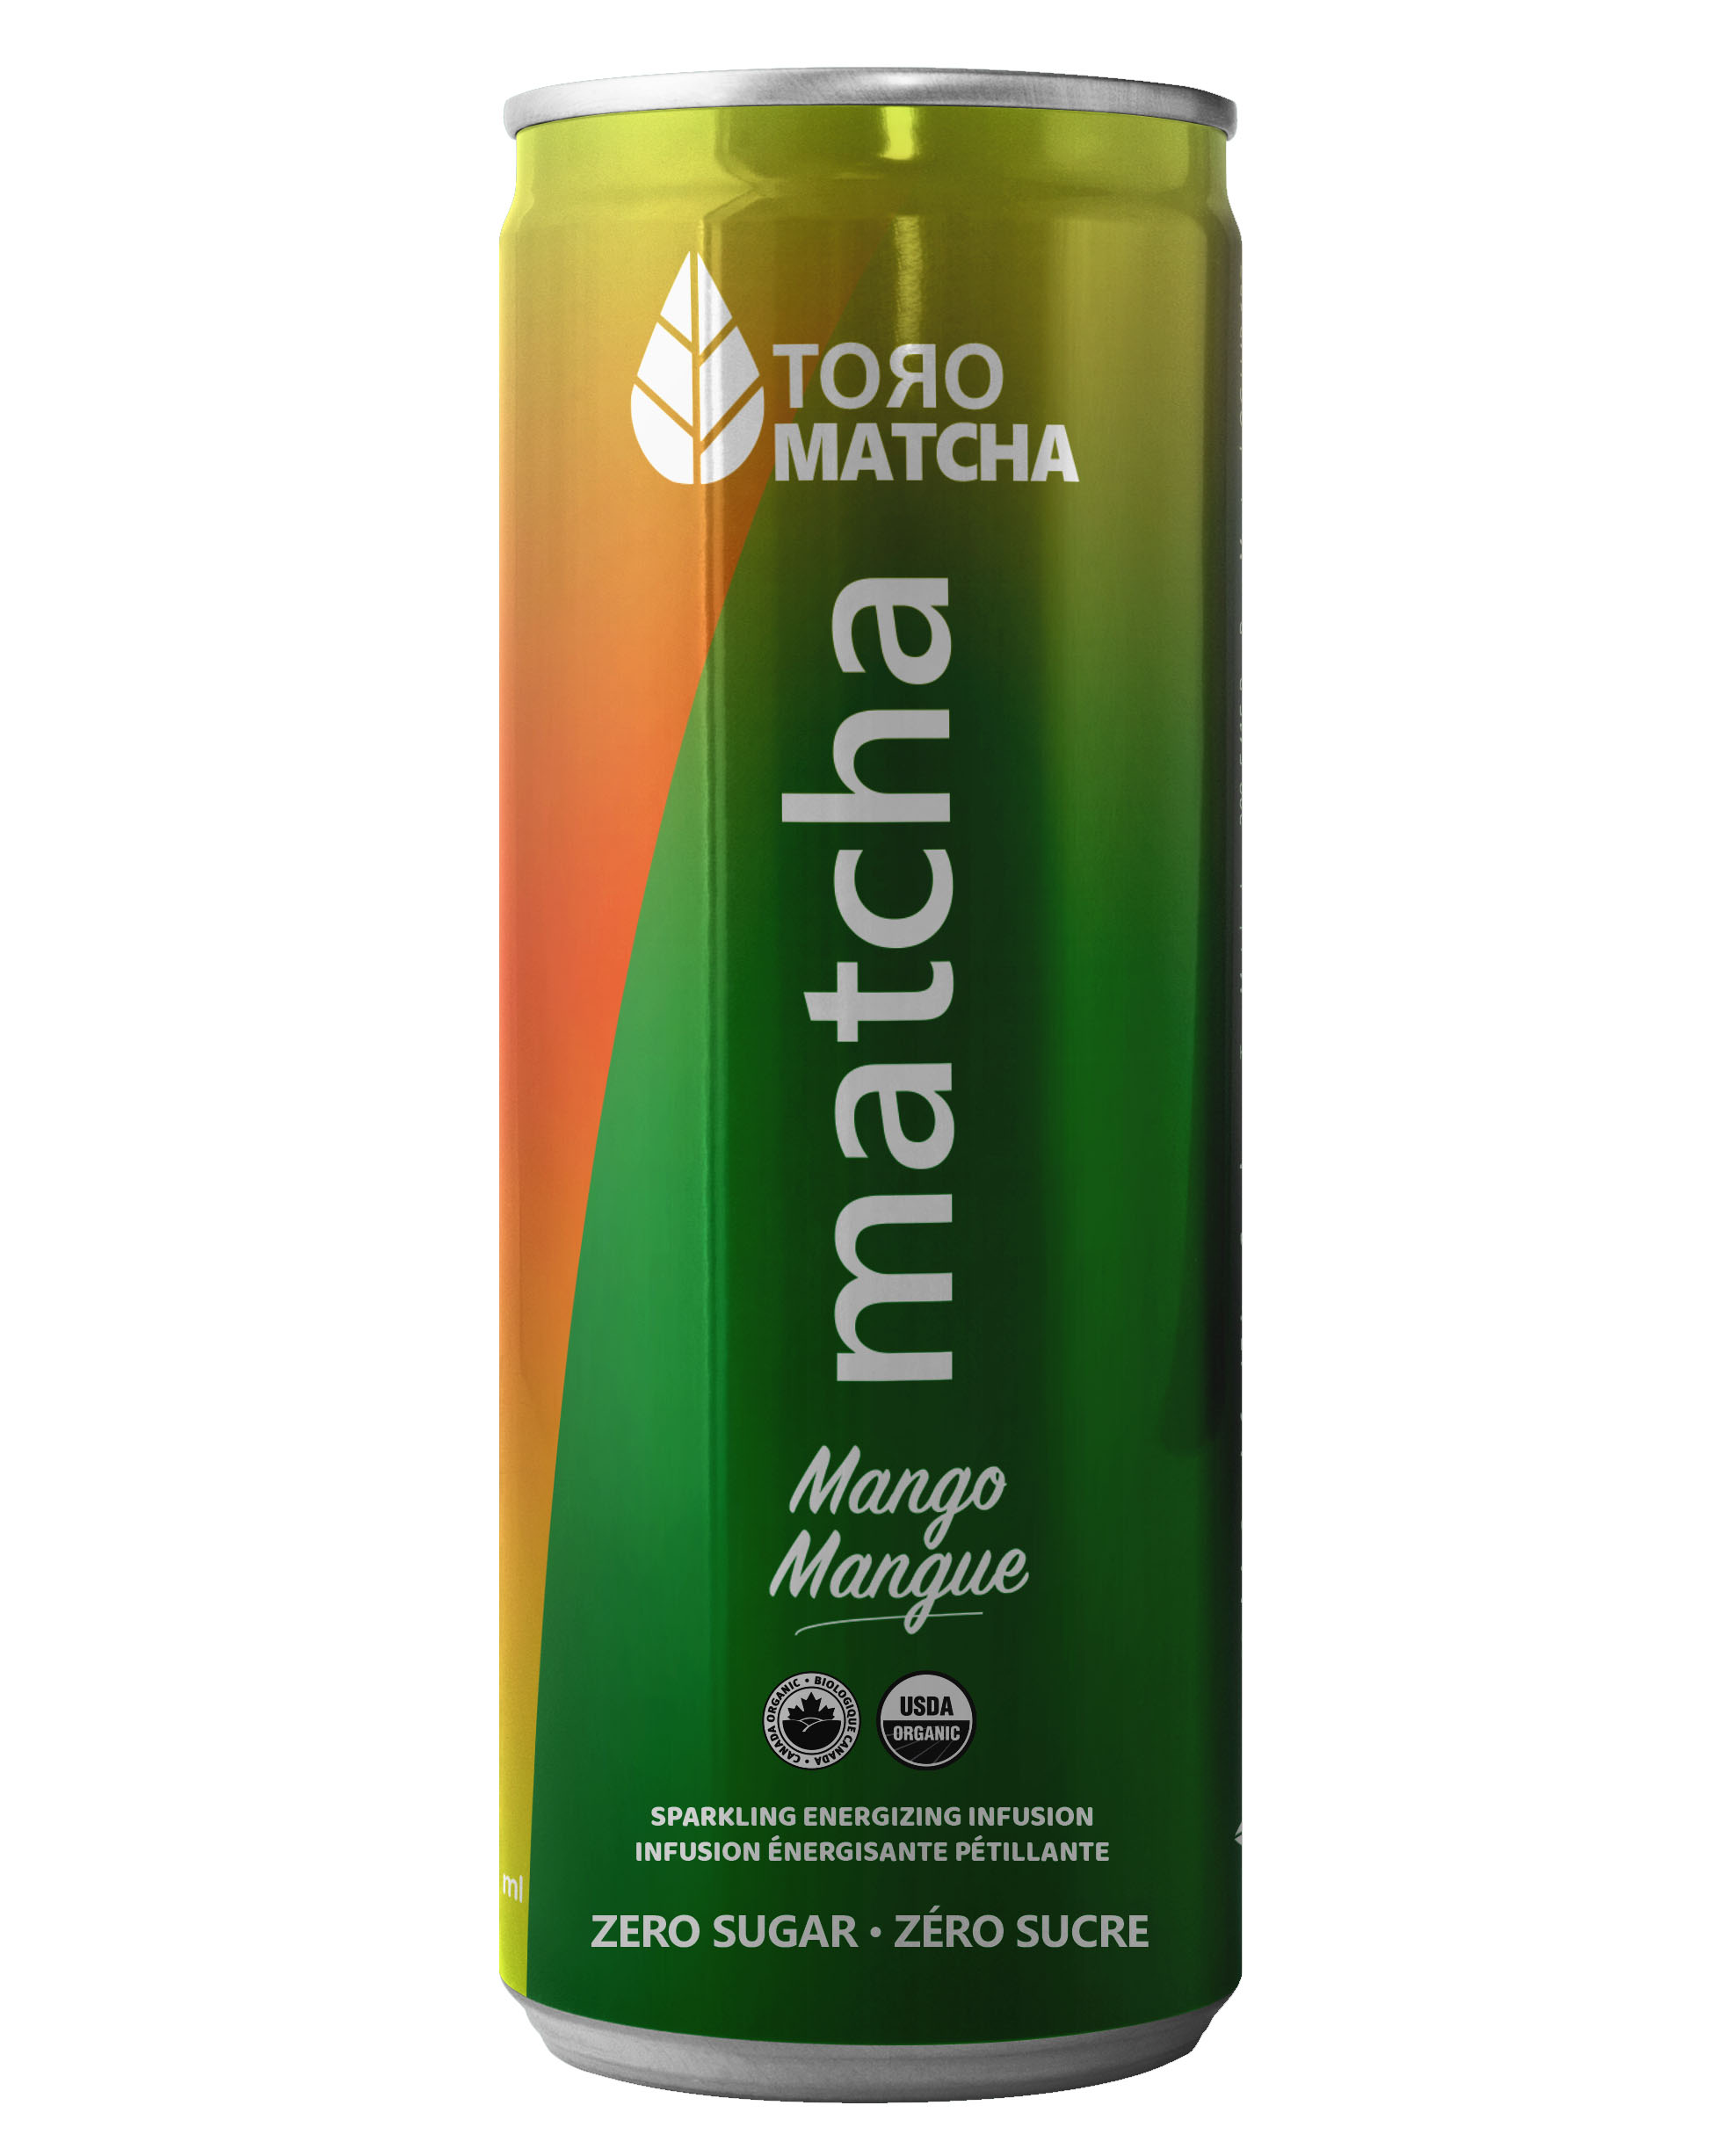 Toro Matcha Energy Drink